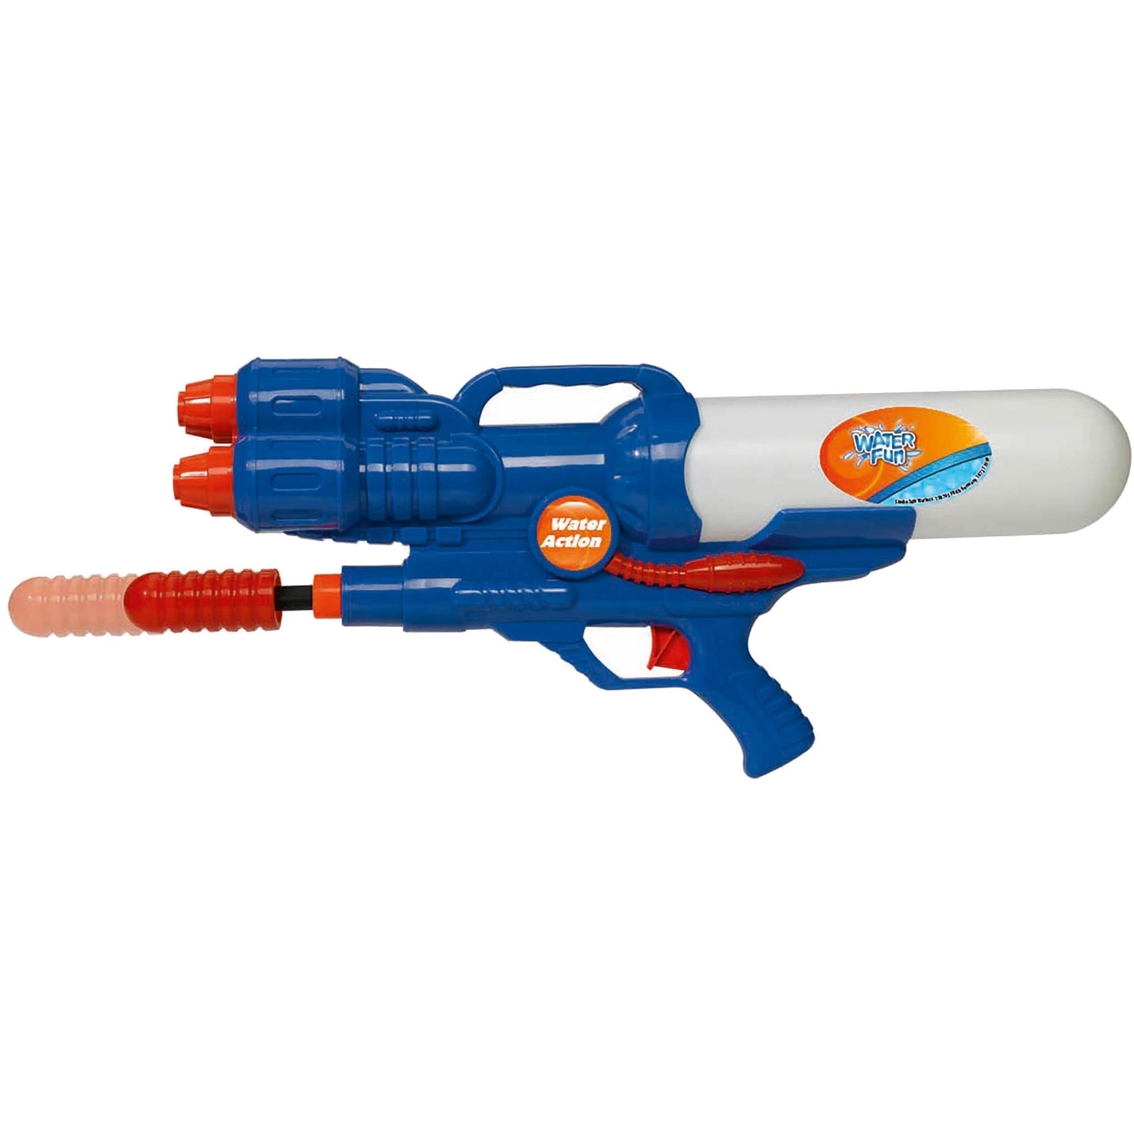 Simba Toys Water Fun Water Gun XL 460 - Image 3 of 4